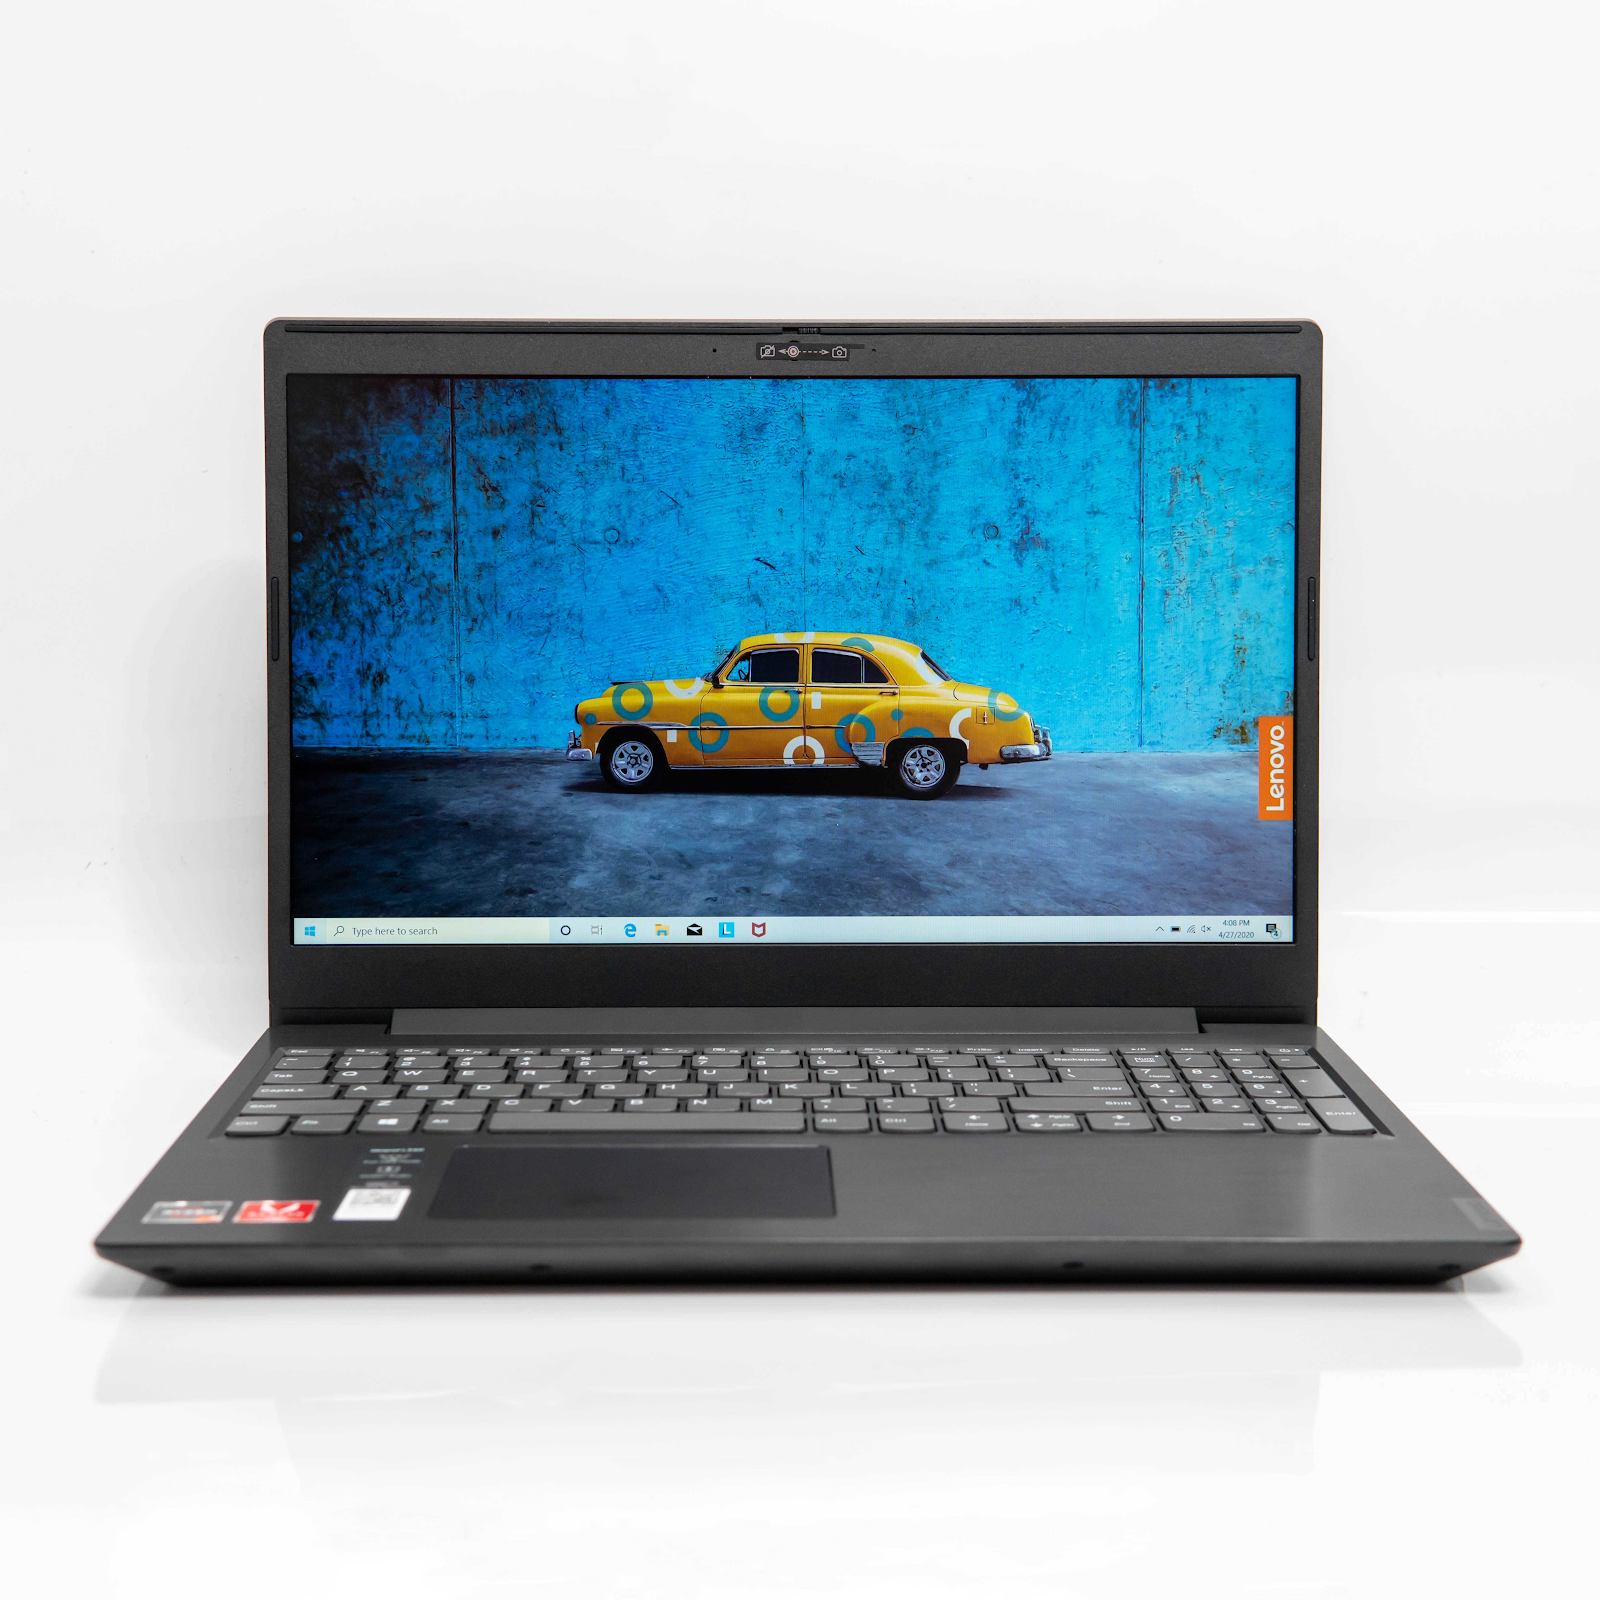 Lenovo L340 - 15 API laptop văn phòng chơi game GIÁ RẺ hot nhất 2020